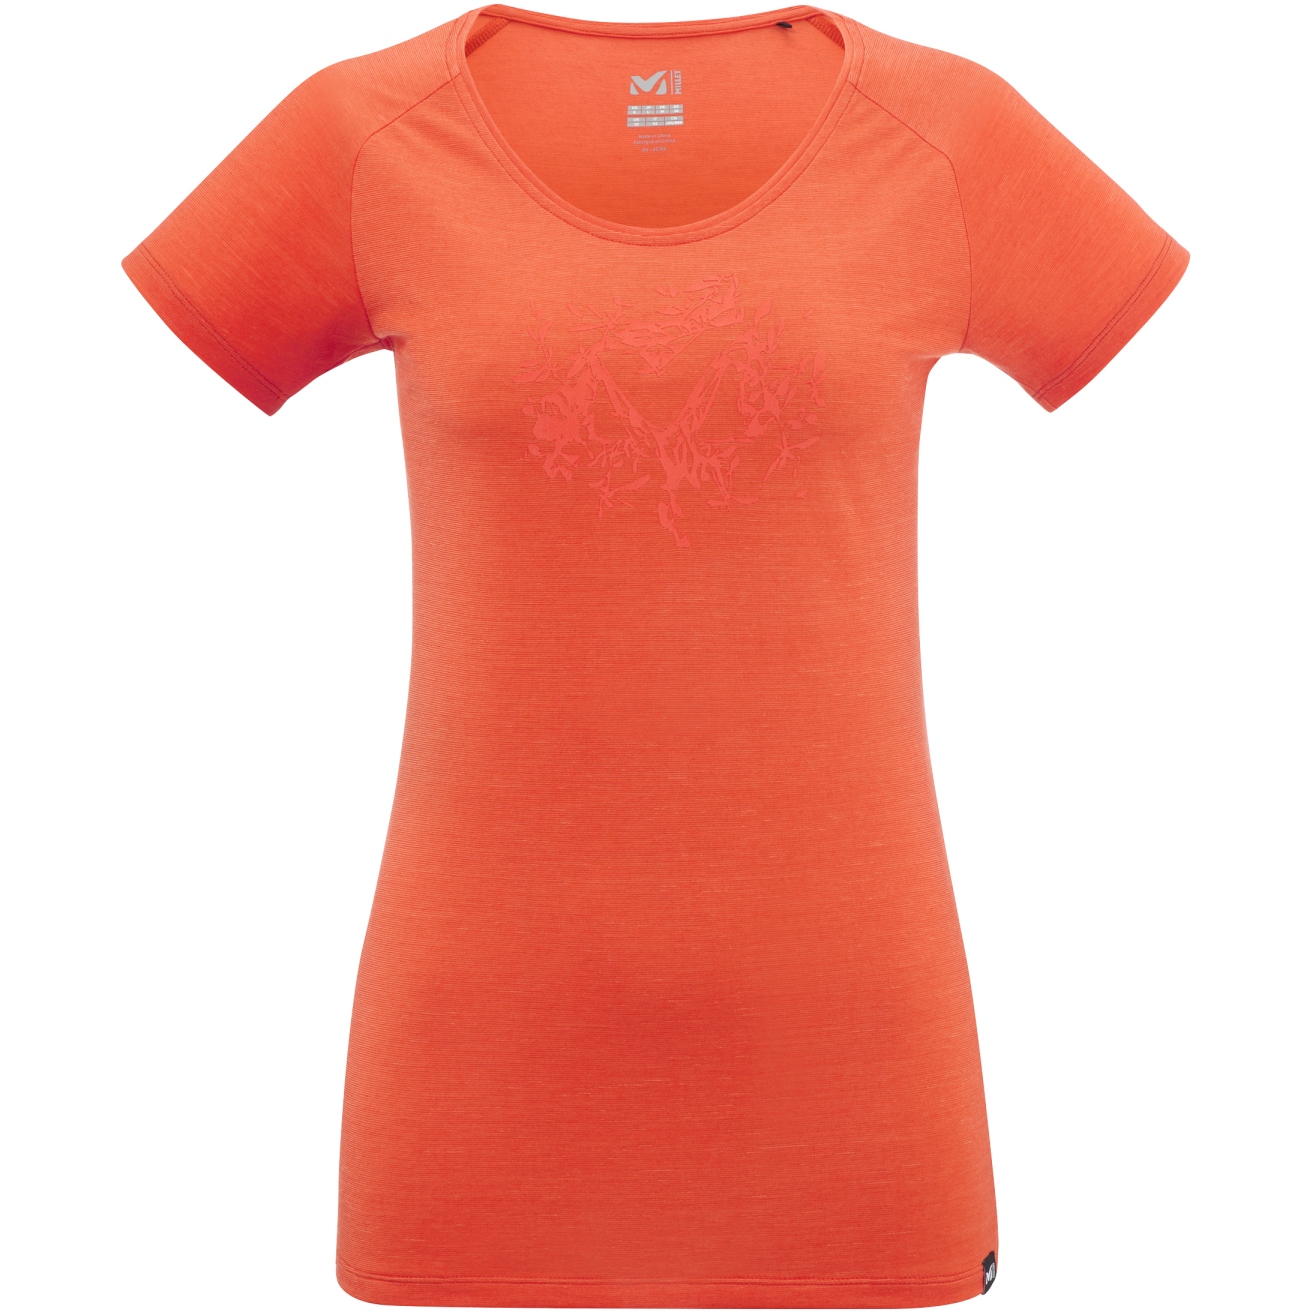 Produktbild von Millet Imja Wool Print T-Shirt Damen - Coral Chrome